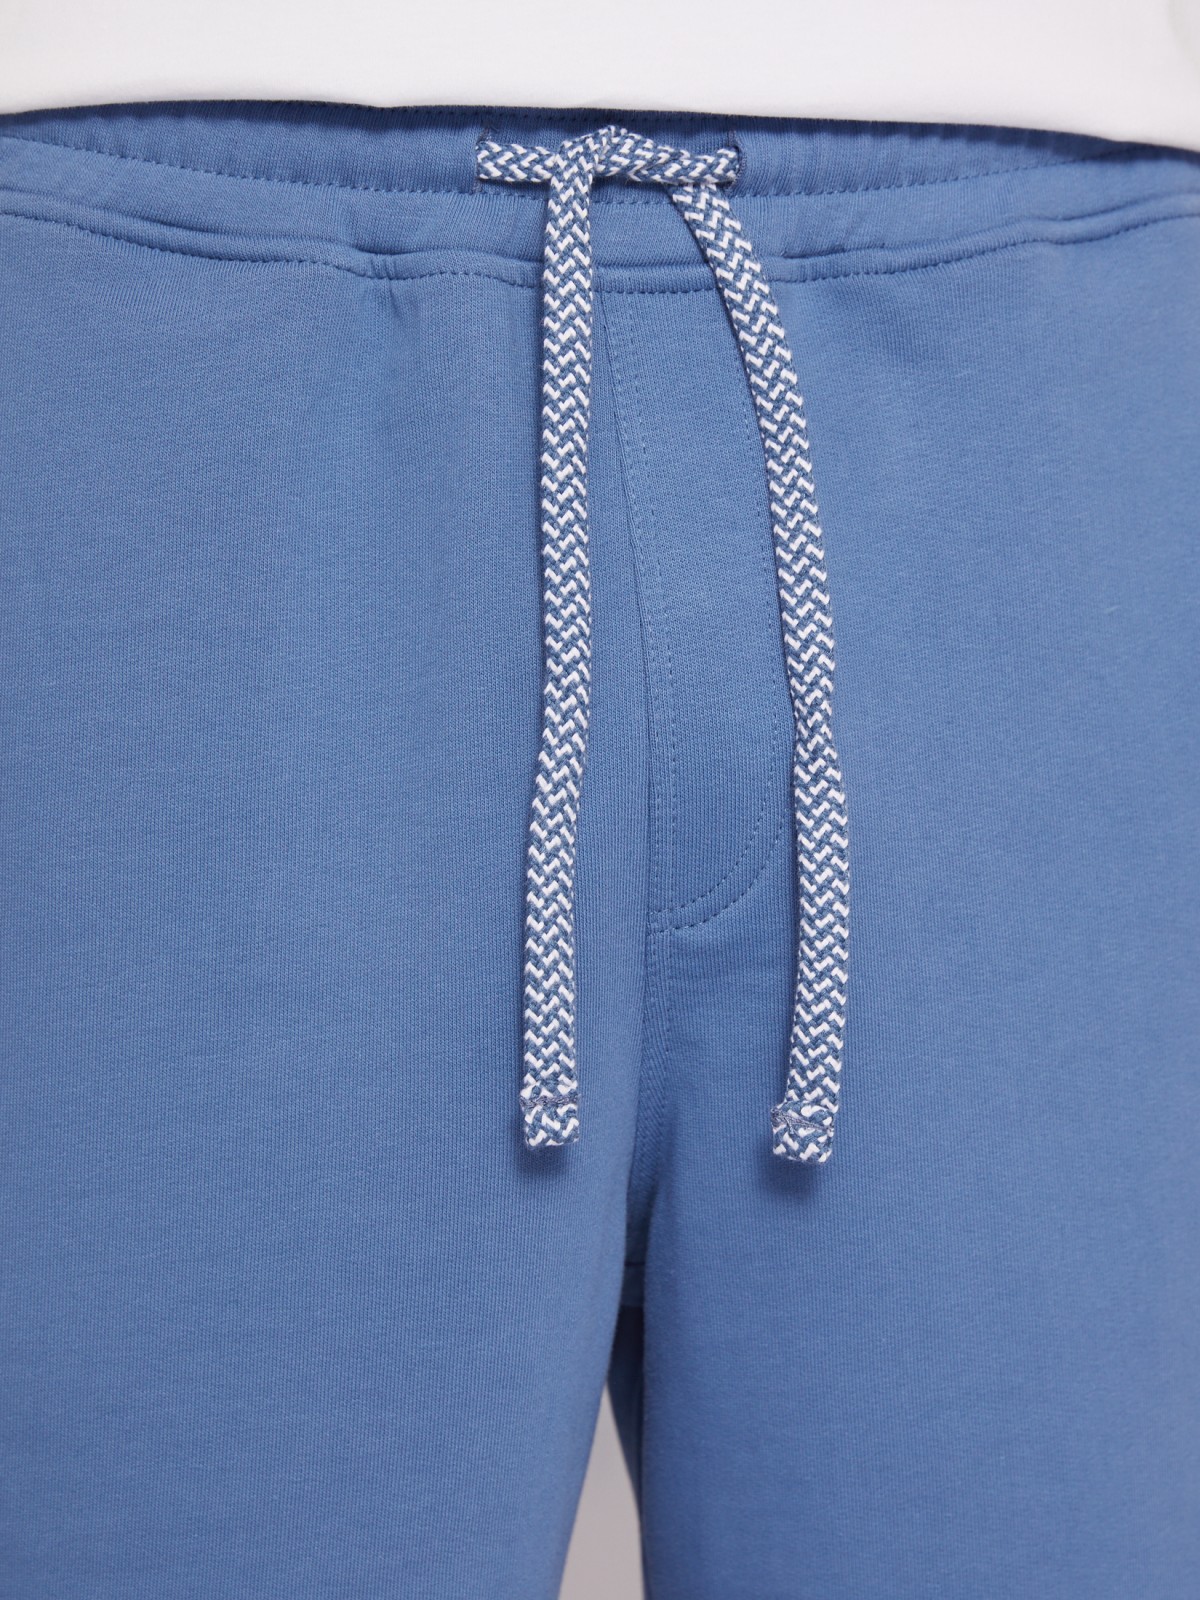 Трикотажные шорты из хлопка на резинке zolla 014237J2Q052, цвет светло-голубой, размер XS - фото 2